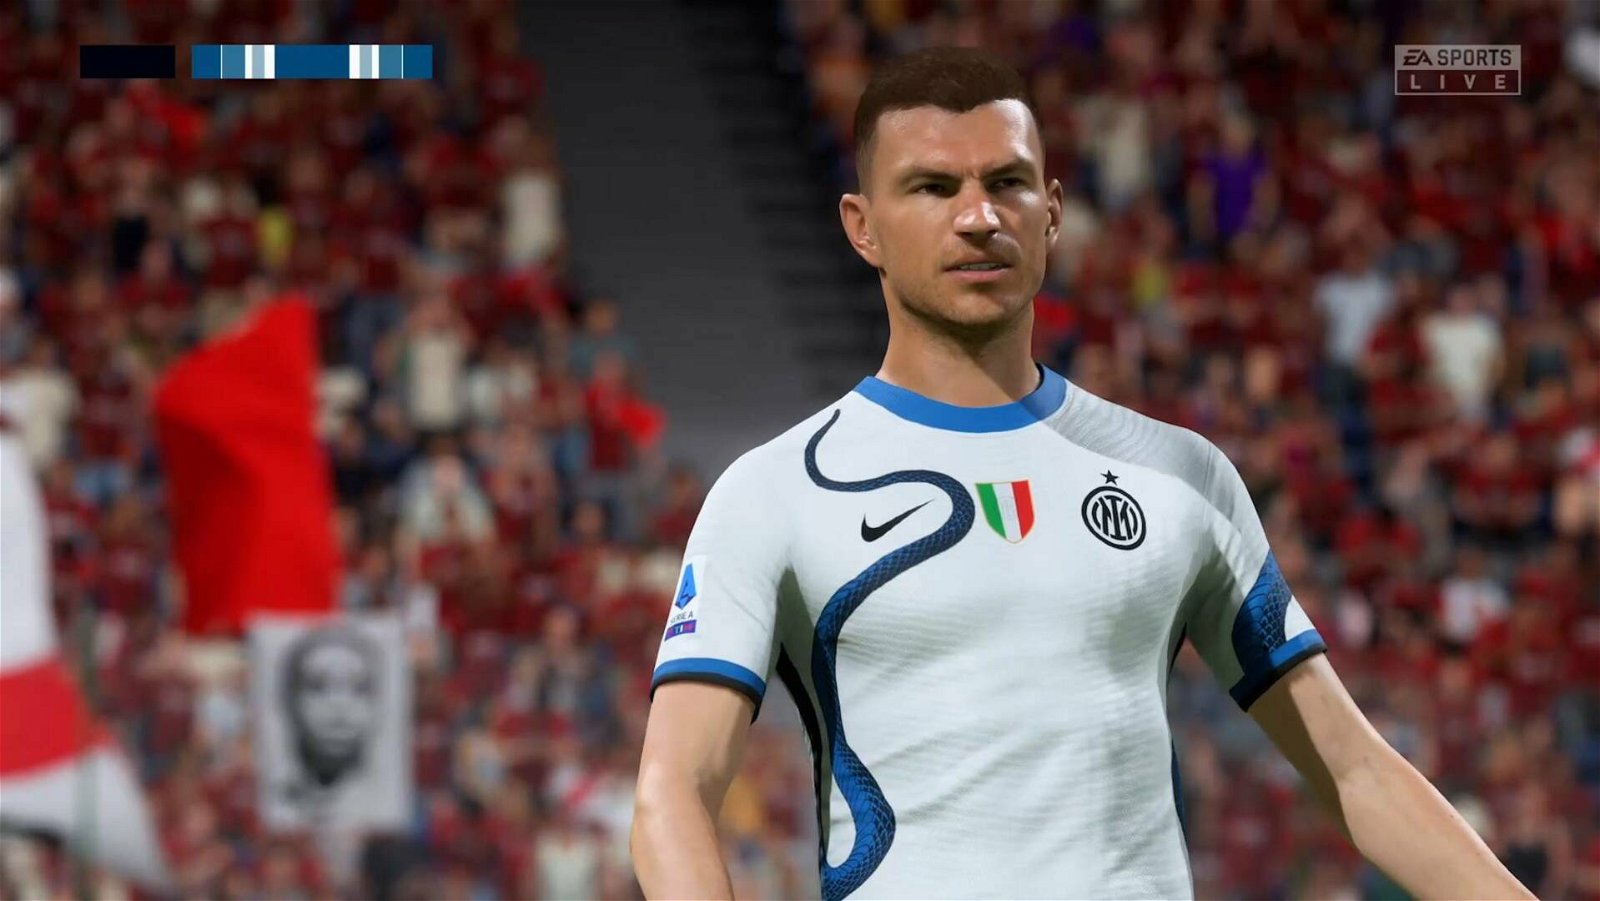 Addio EA, ma la FIFA sta già cercando nuovi publisher